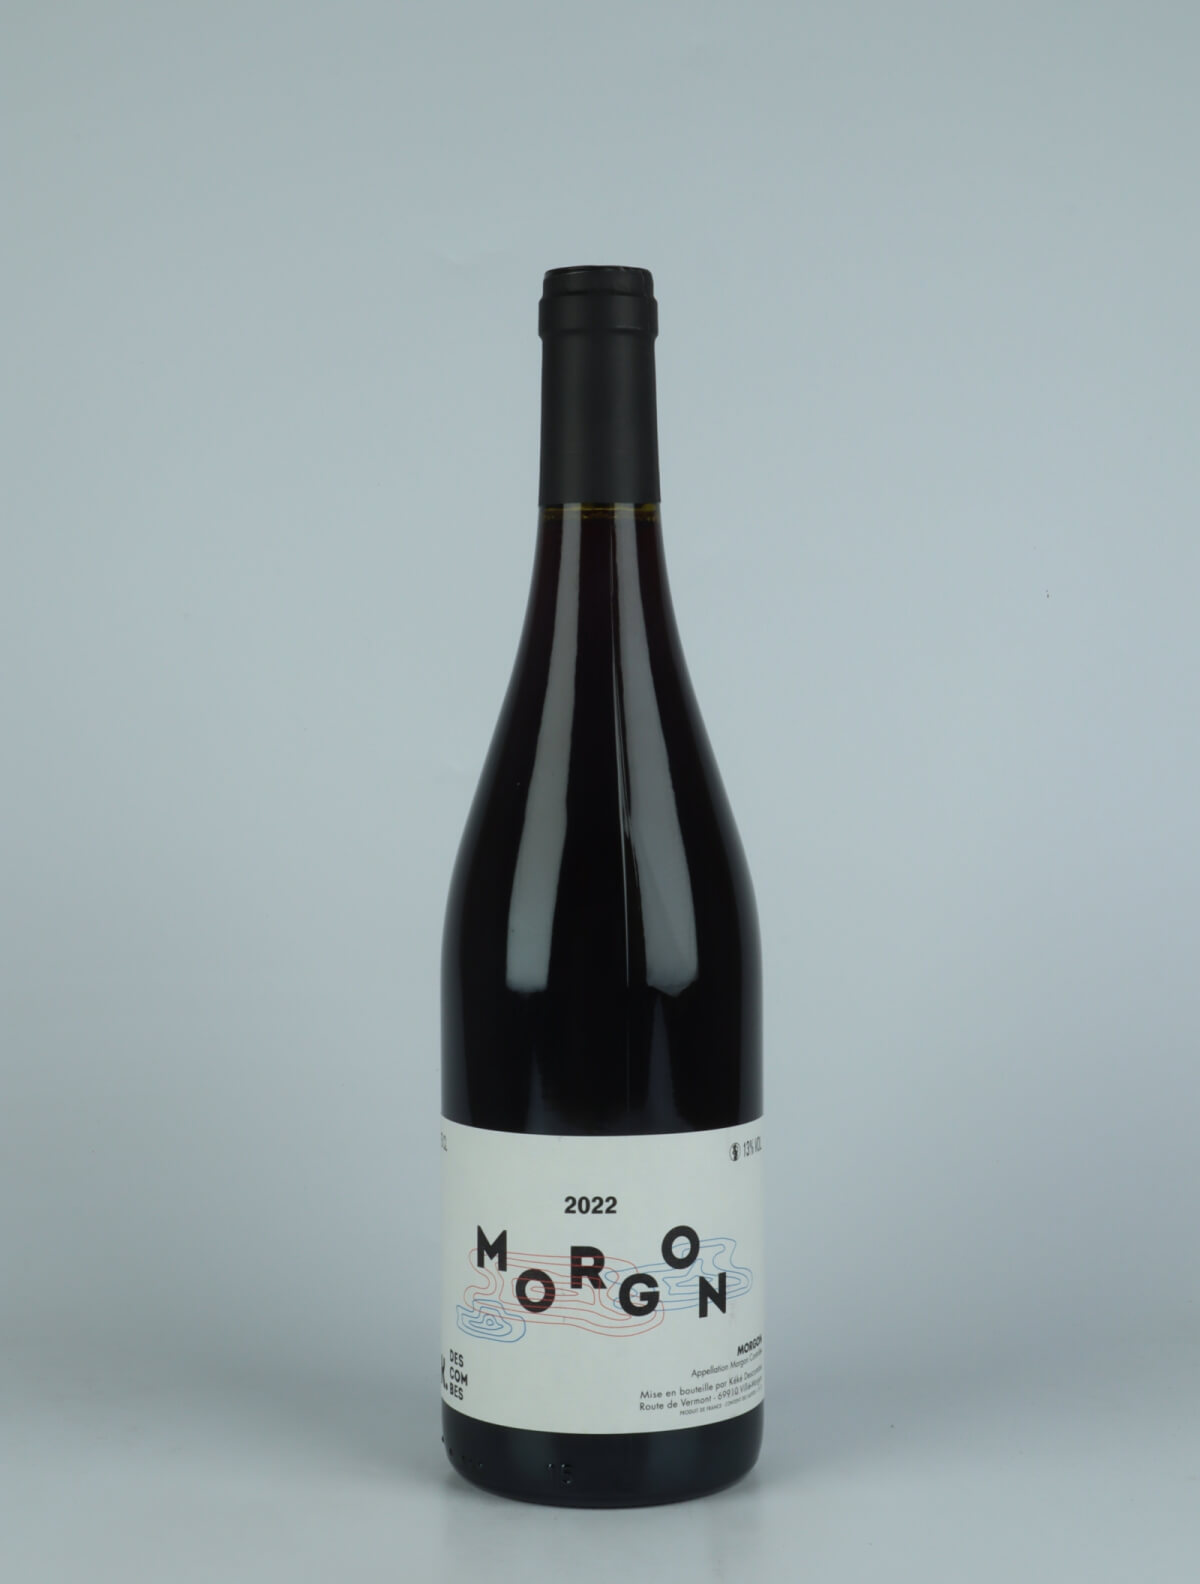 En flaske 2022 Morgon Rødvin fra Kewin Descombes, Beaujolais i Frankrig